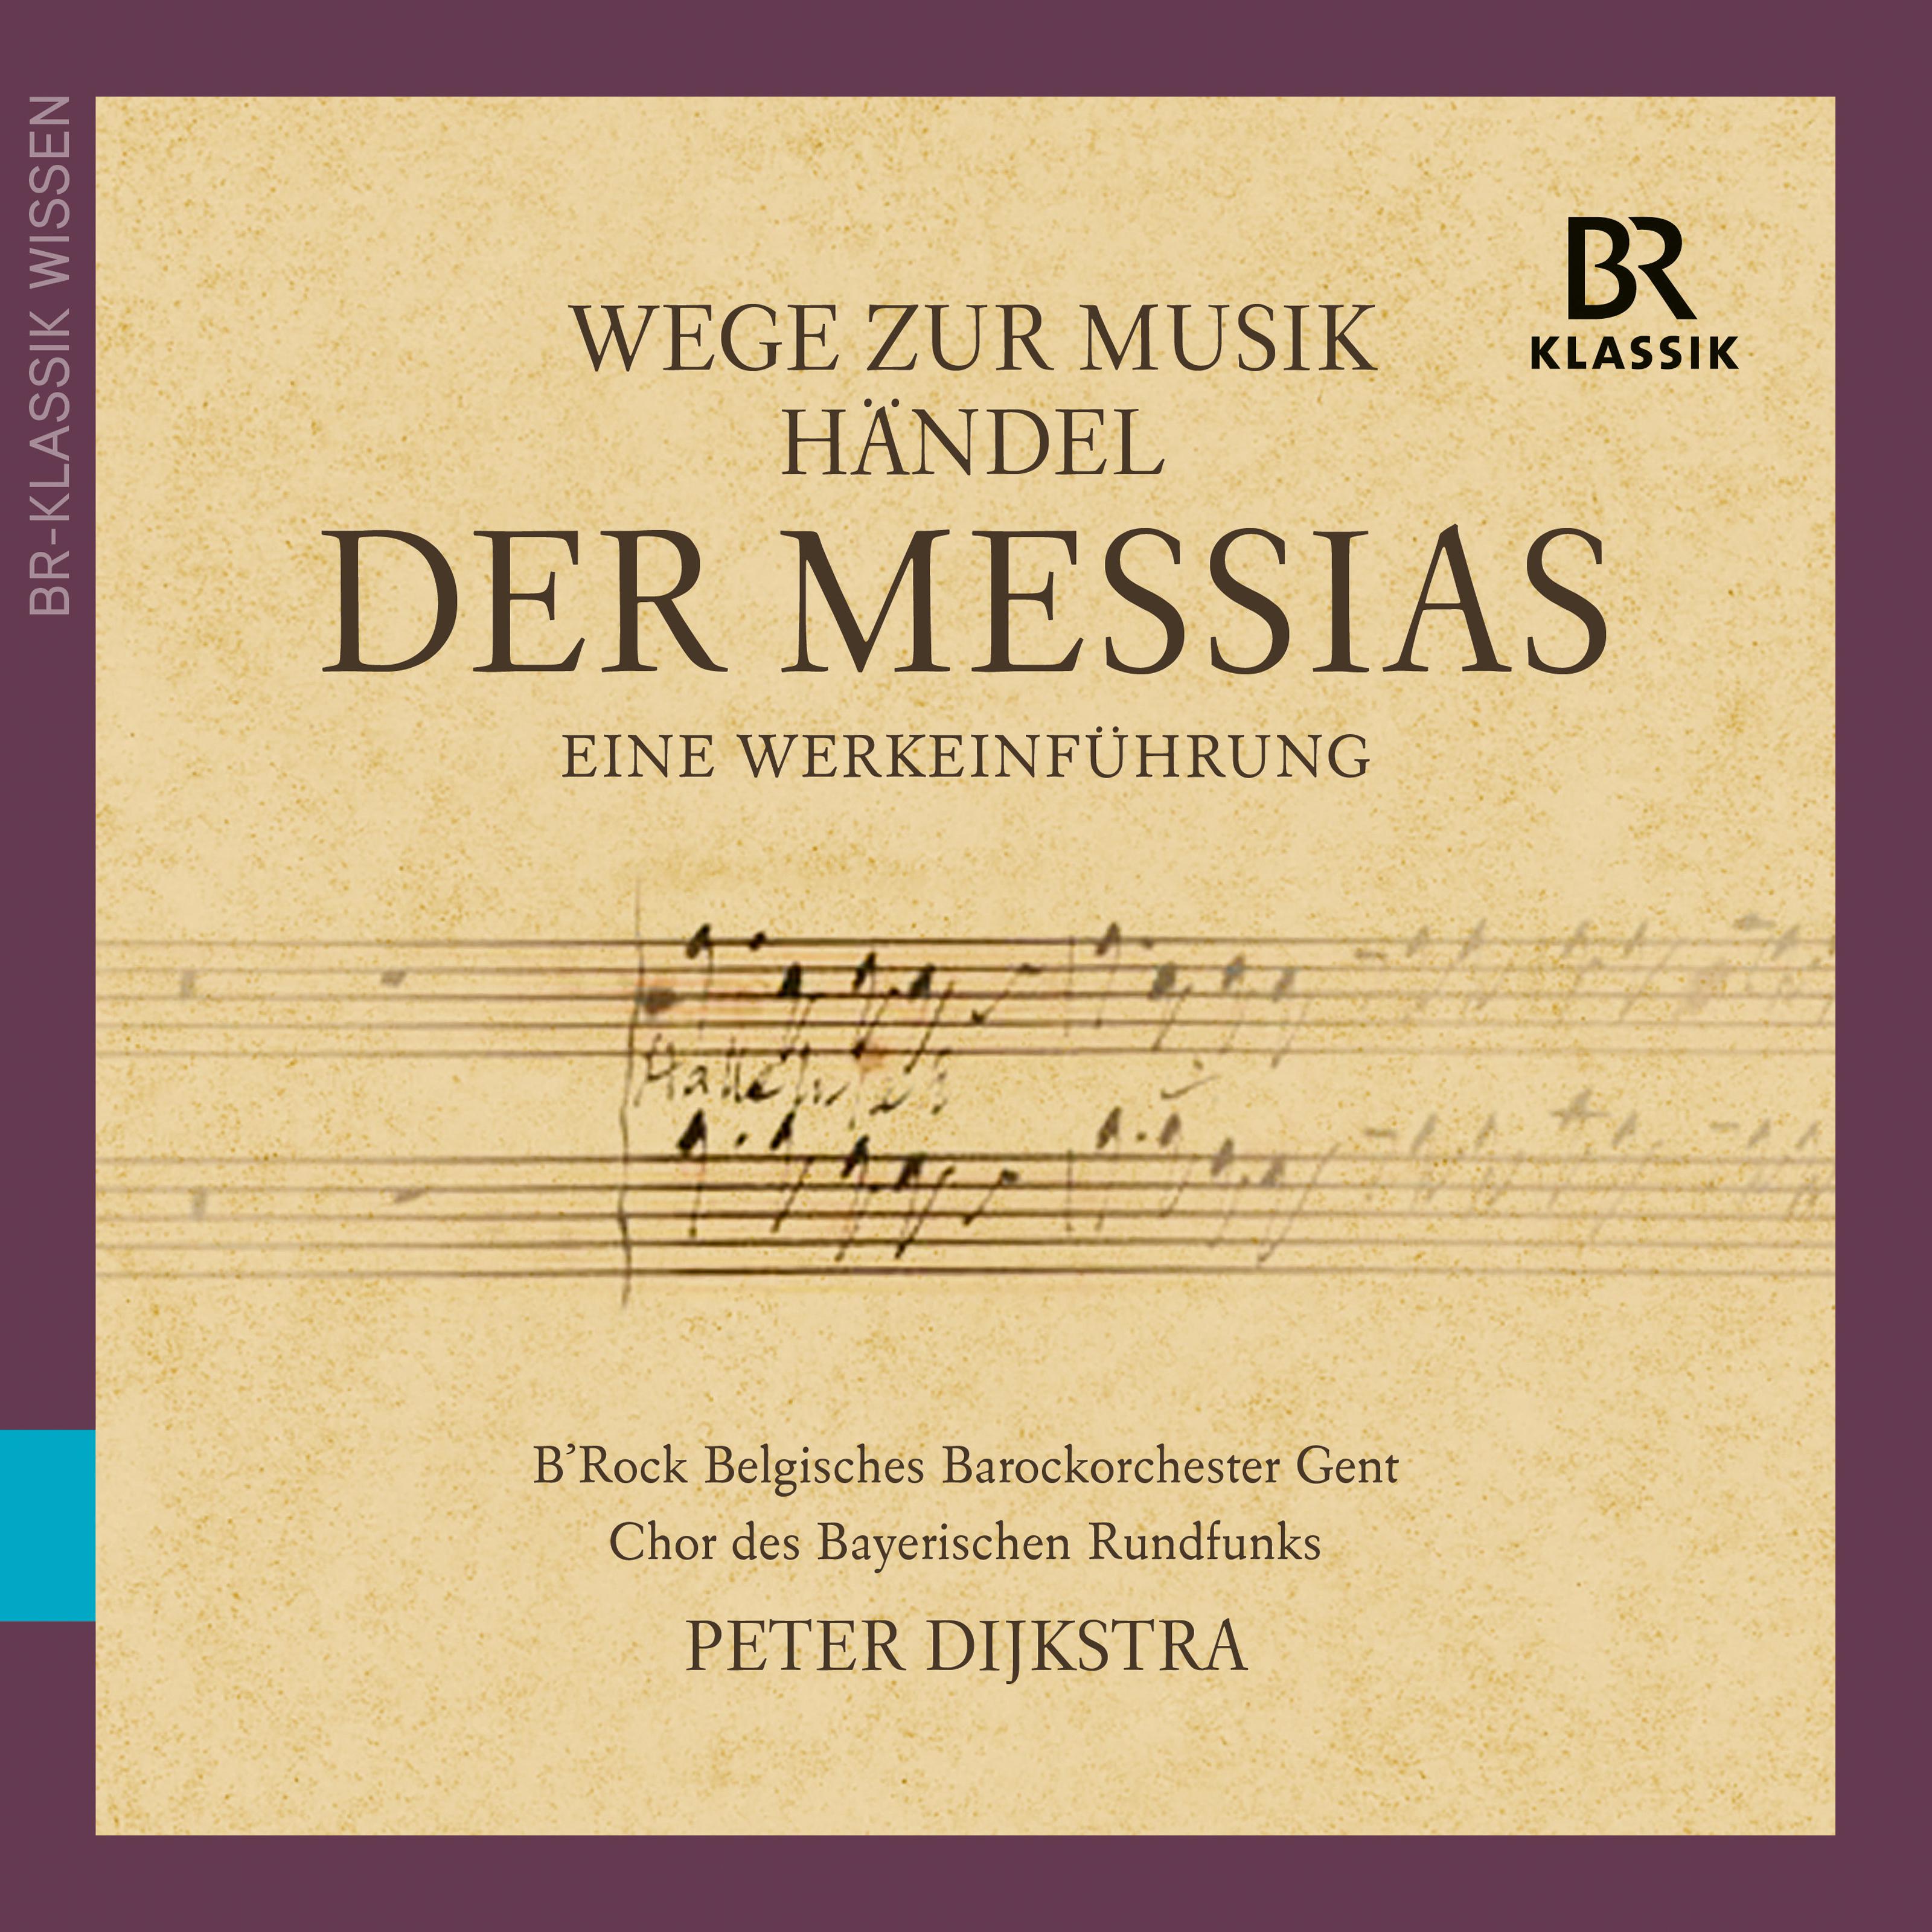 Wege zur Musik aus der Messias, Teil 2 " Wohlt tigkeit und gute Taten": Musik als Klangmalerei